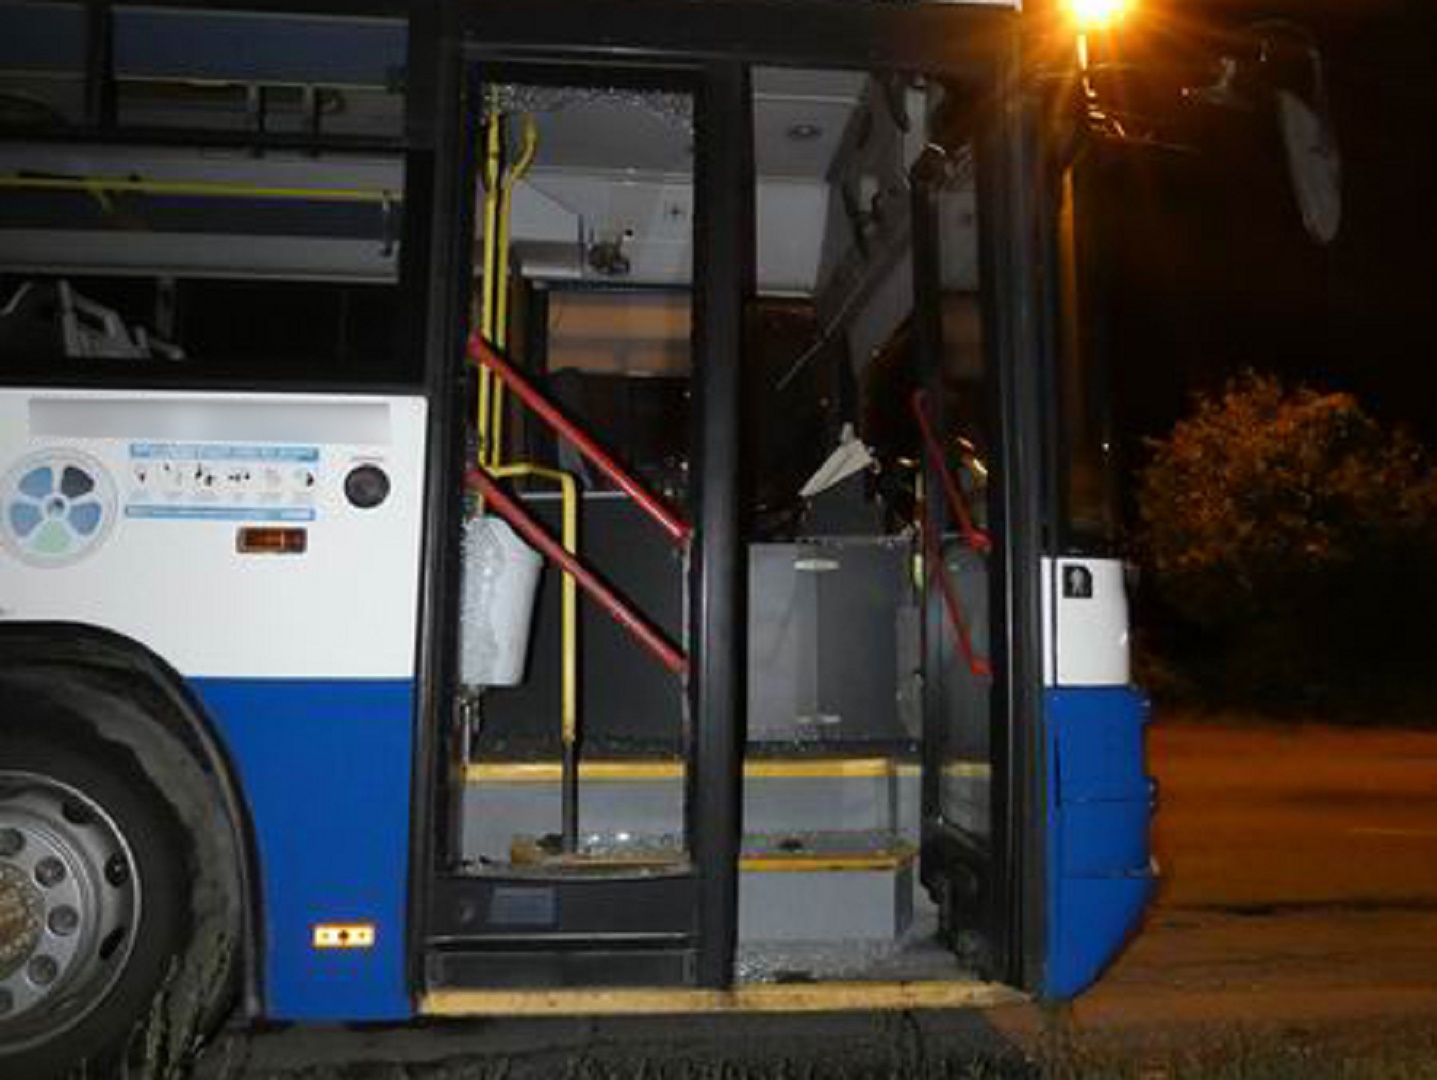 Egy kazári férfi akart egy kis aprót, ezért feltört egy volánbuszt, de ha már ott volt, el is vitte a buszt egy körre